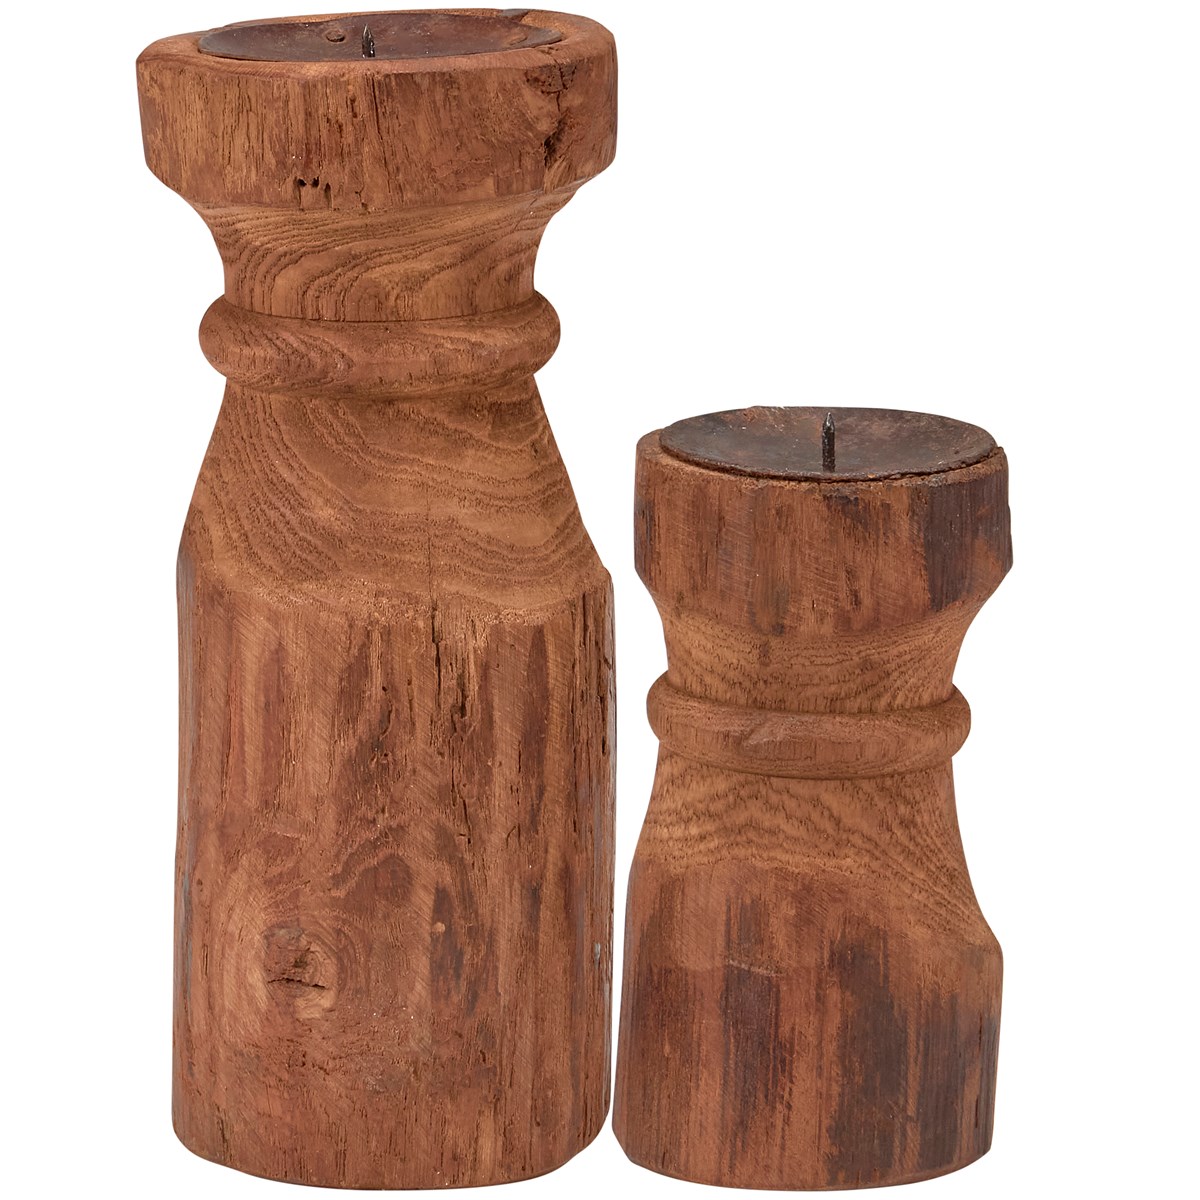 Primitive Wood Candle Holder Set - Wood, Metal